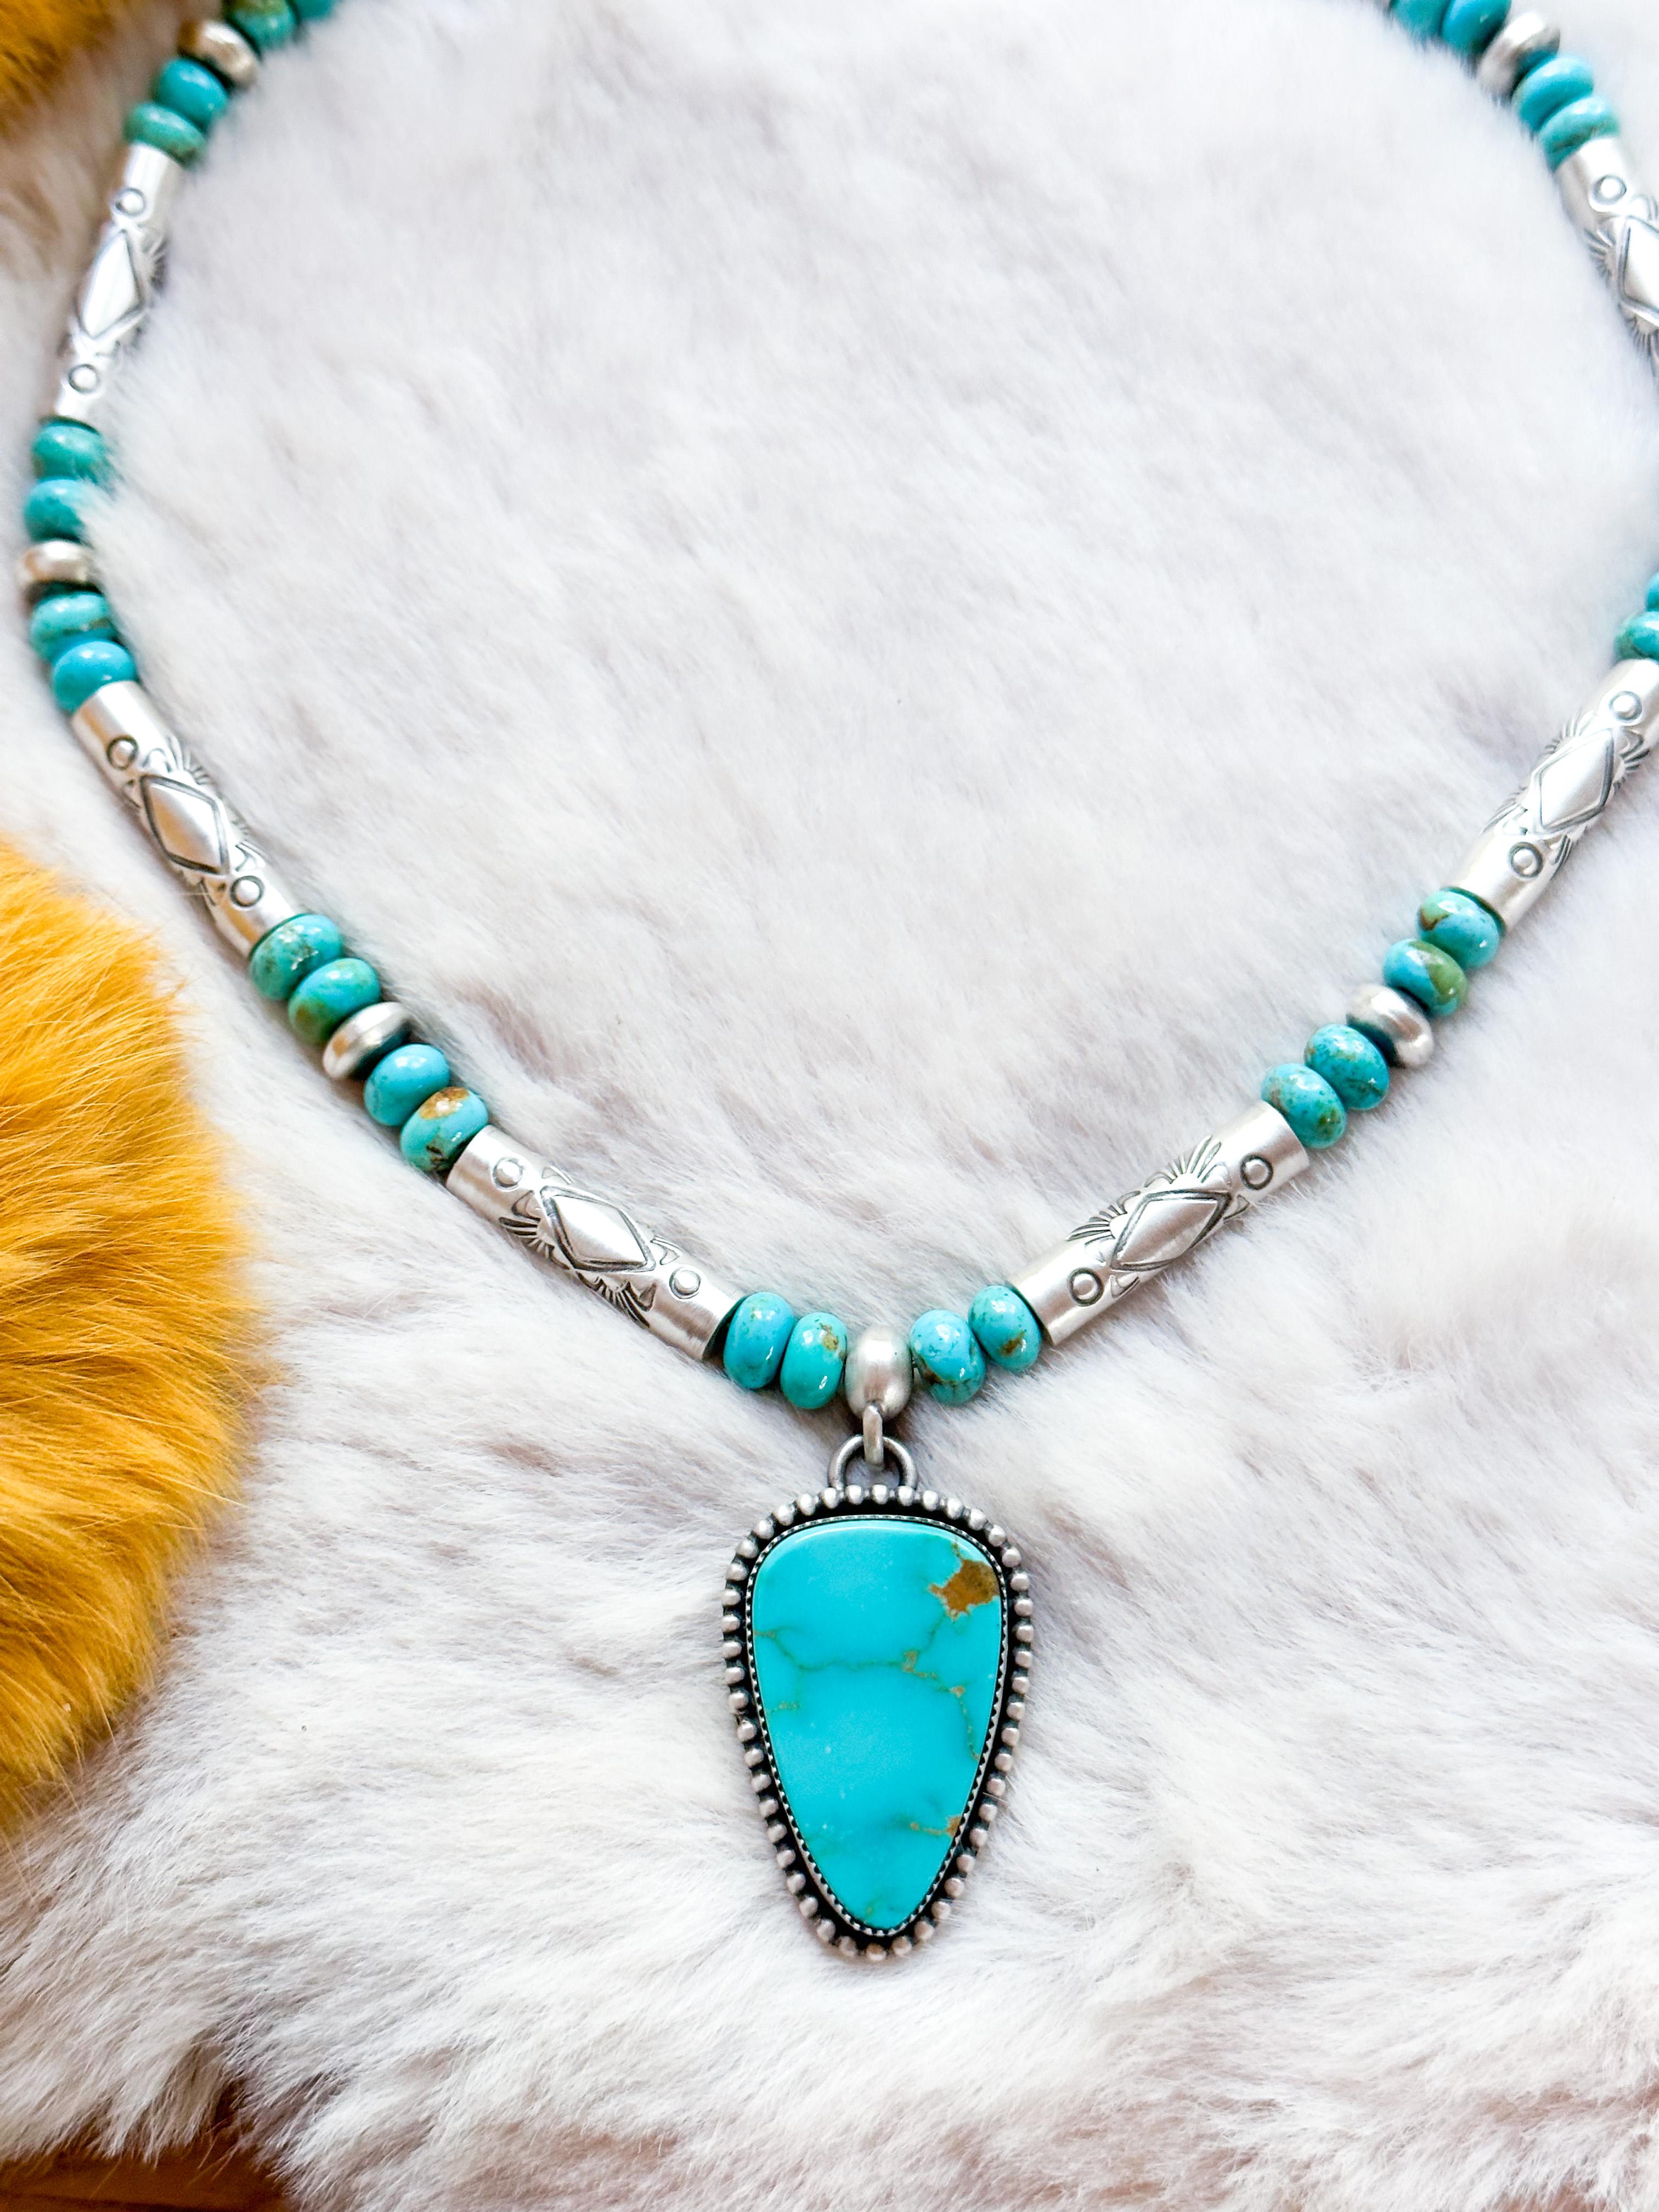 Unsere bezaubernde, handgeprägte türkisfarbene Perlenkette ist eine auffallende Verschmelzung von lebhaften Blau- und Grüntönen, die mit schimmernden Silberperlen verziert sind. Dieses exquisite Stück wird von einem faszinierenden dreieckigen